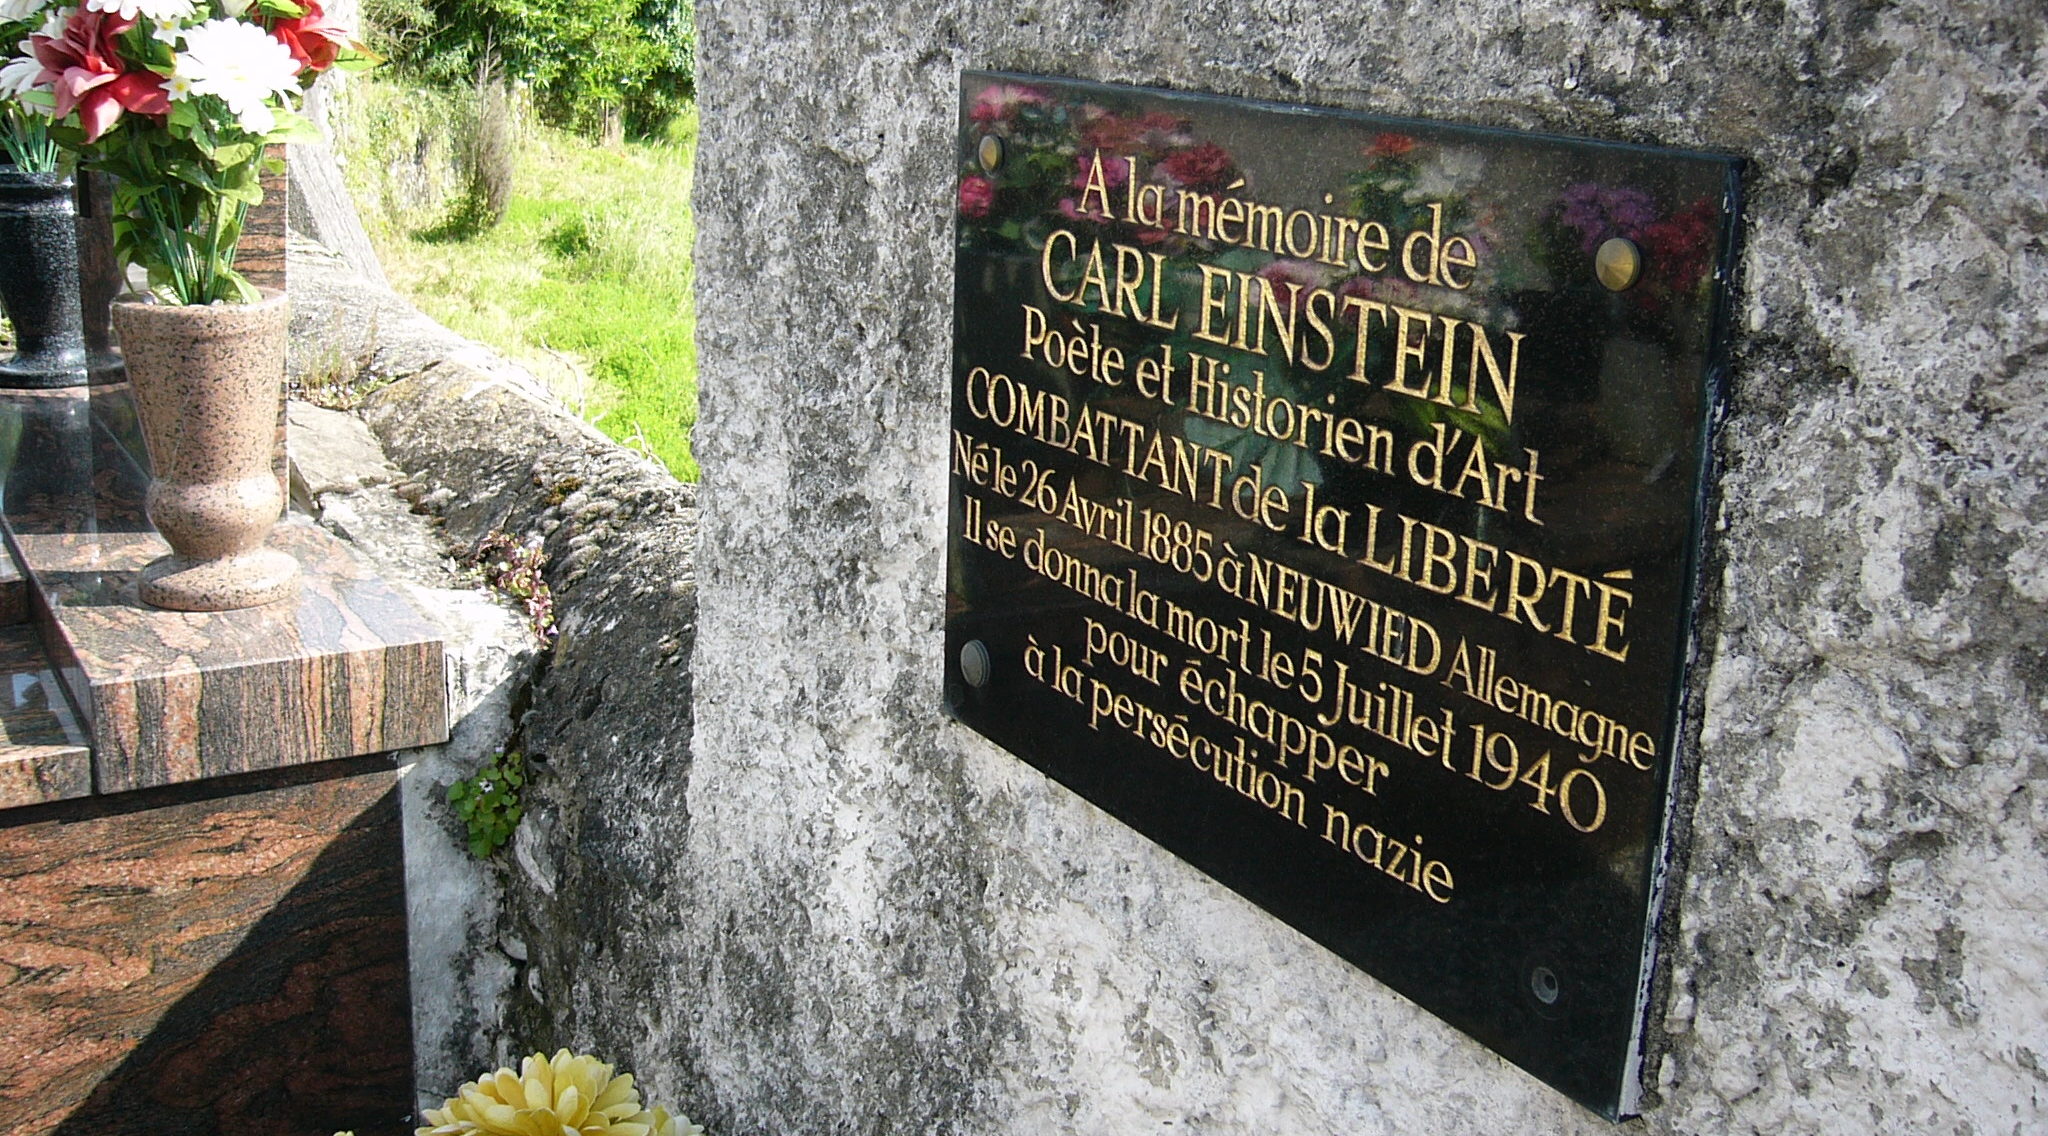 Tomba de Carl Einstein al cementiri de Buelh e Vesinc (fotografia: X. M.)